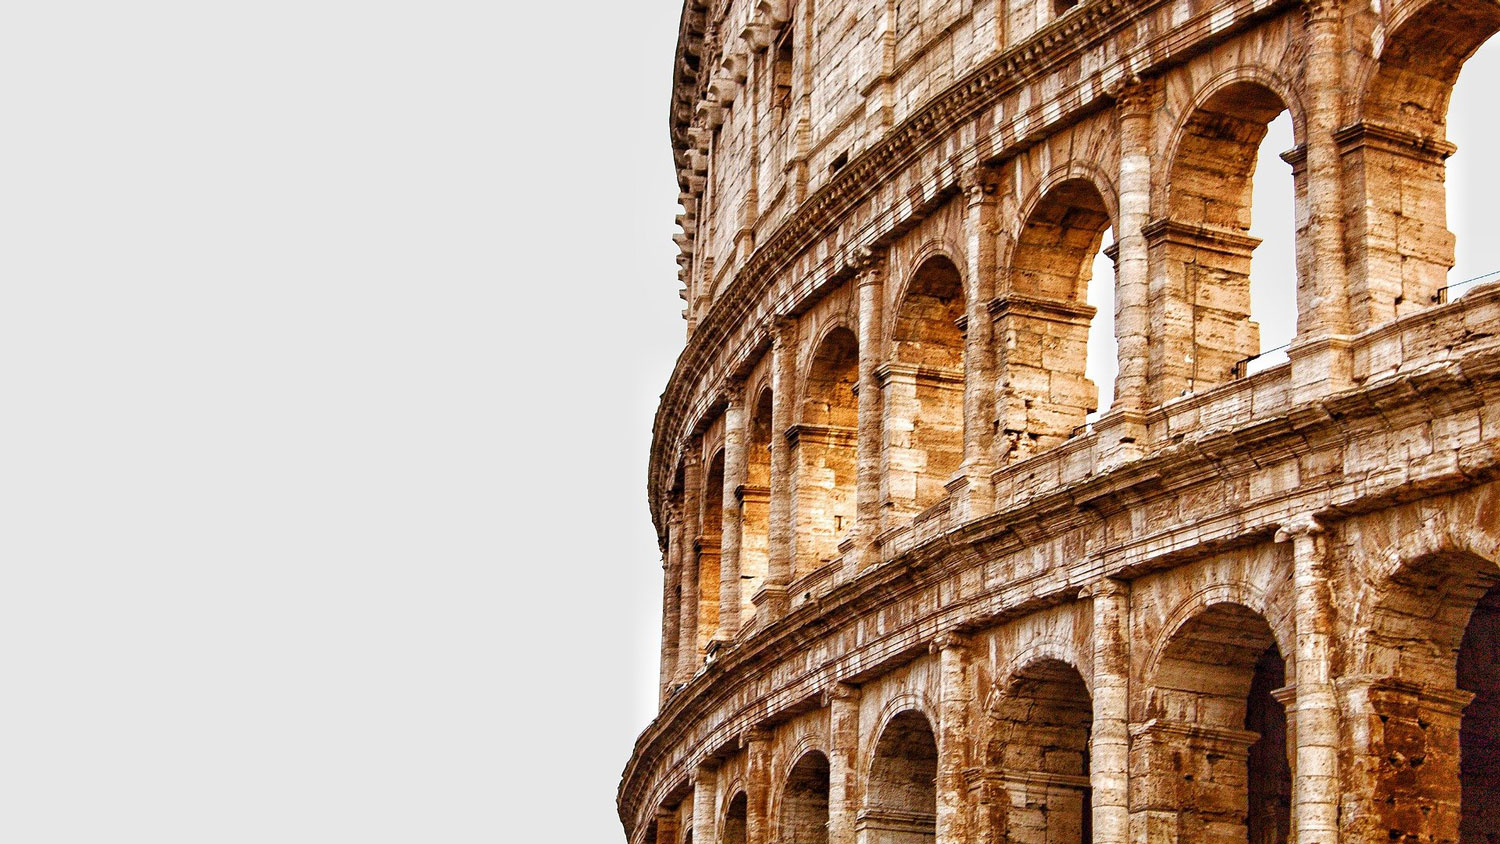 Rome - Colosseum